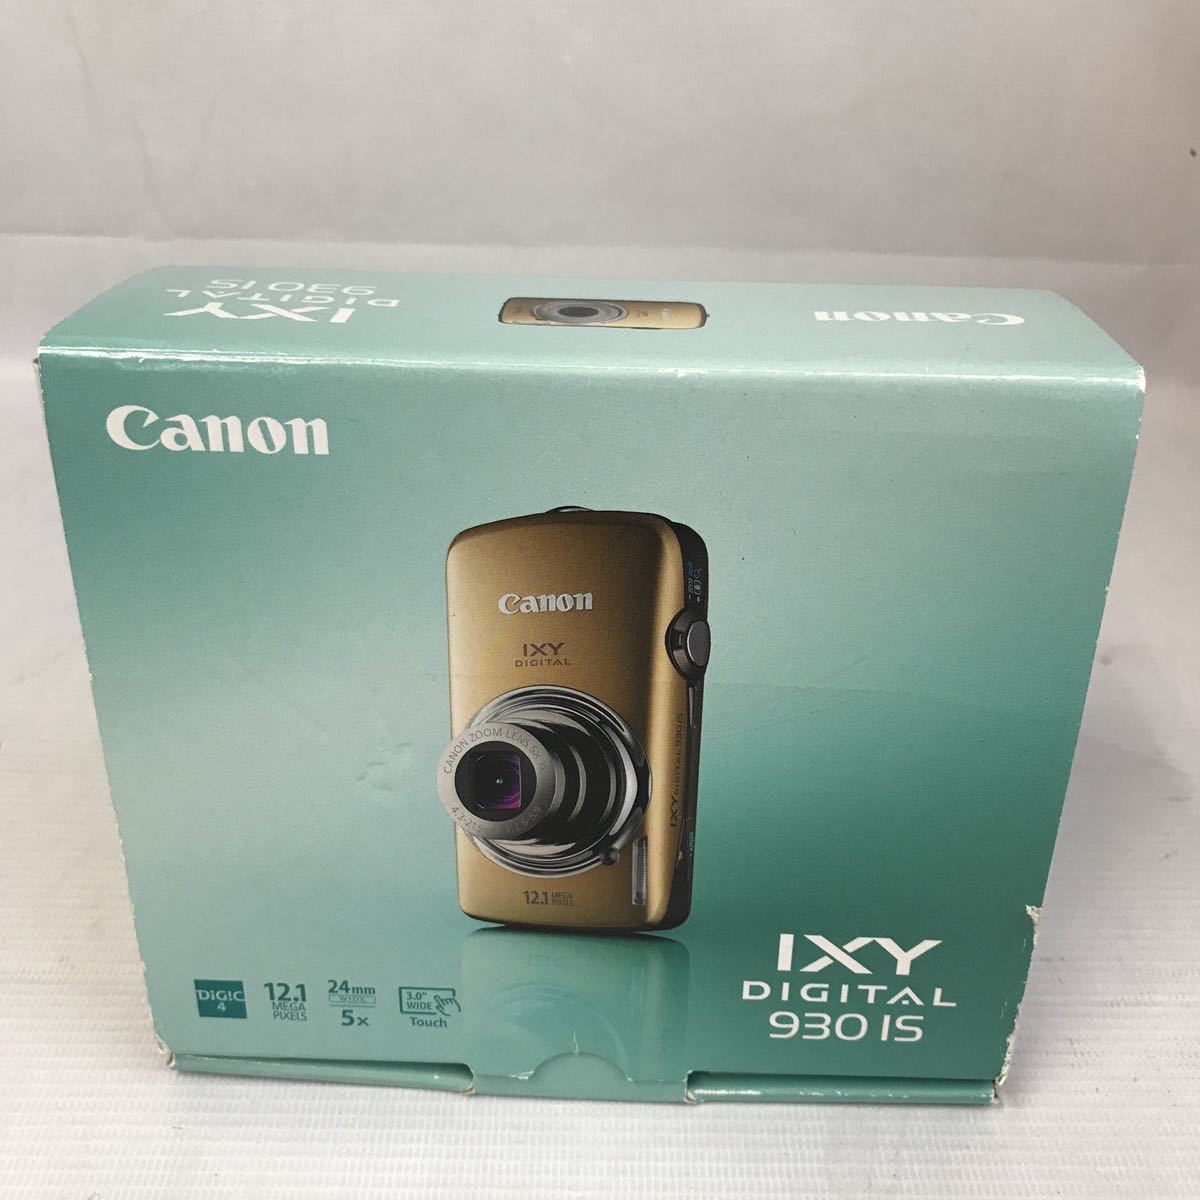 み Canon キャノン IXY IXY DIGITAL コンパクトデジタルカメラ 930IS(キヤノン)｜売買されたオークション情報